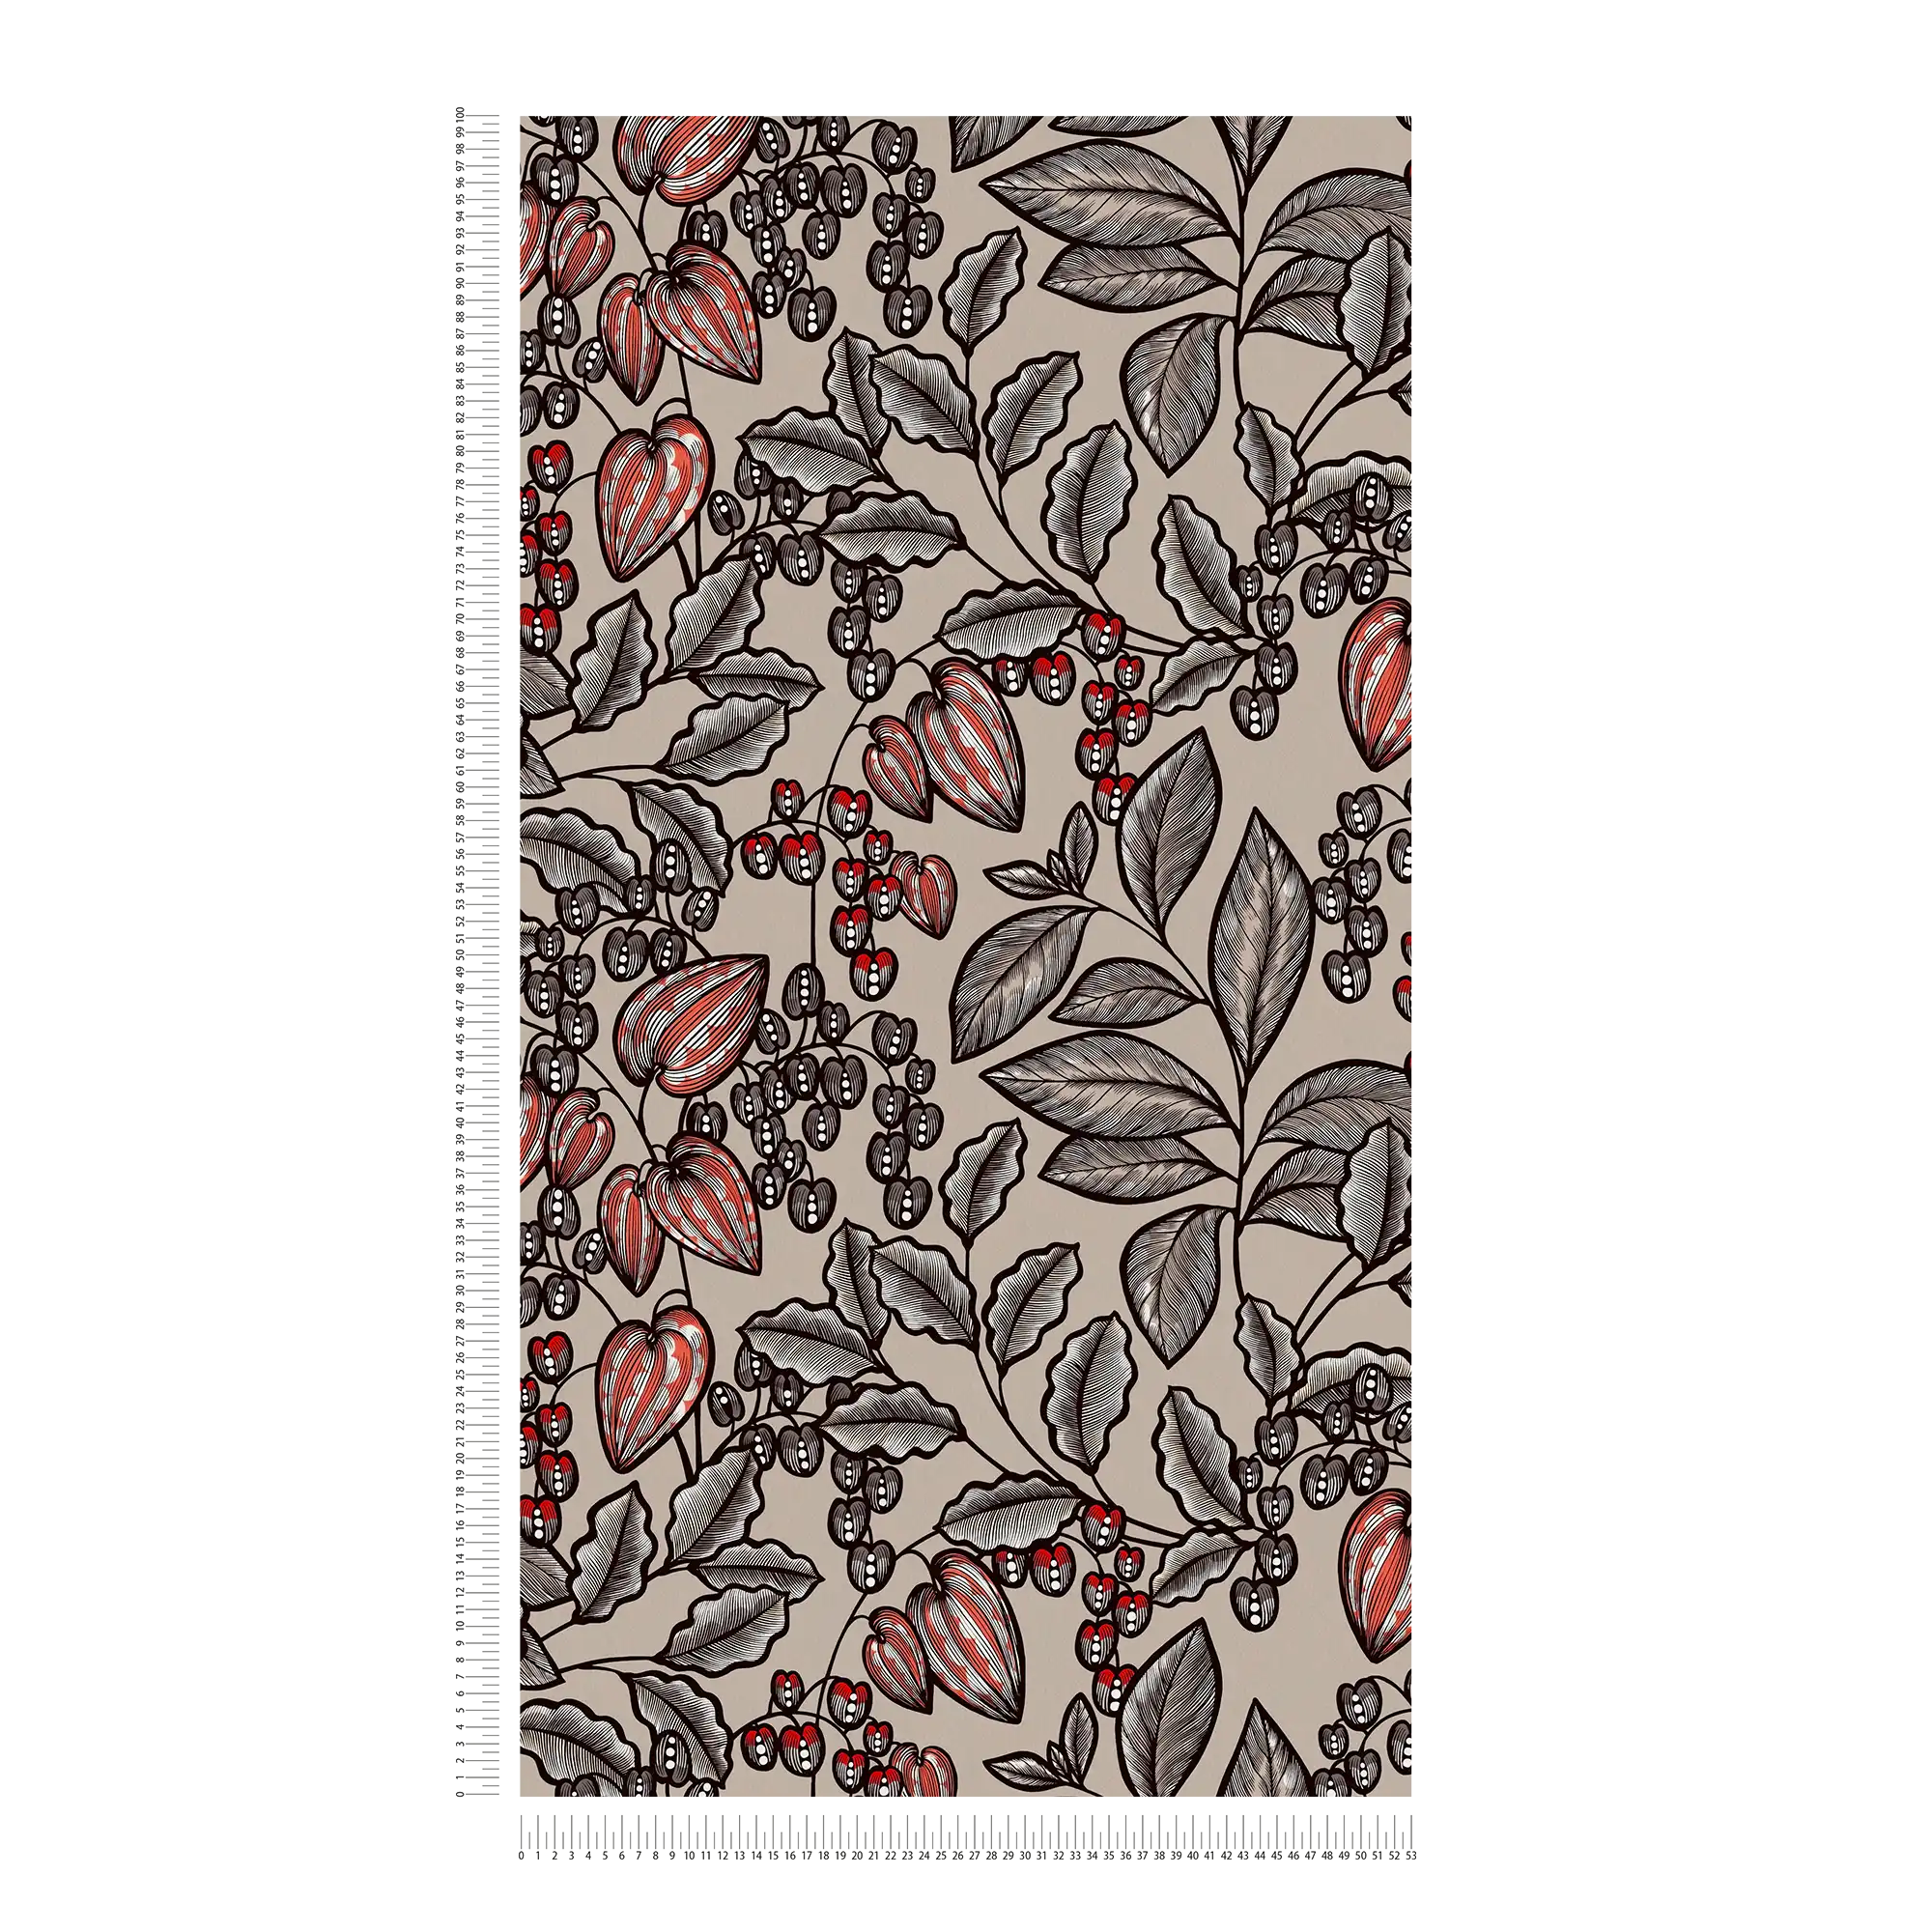             Wallpaper Greige modern flowers & leaves design - brown, grey, red
        